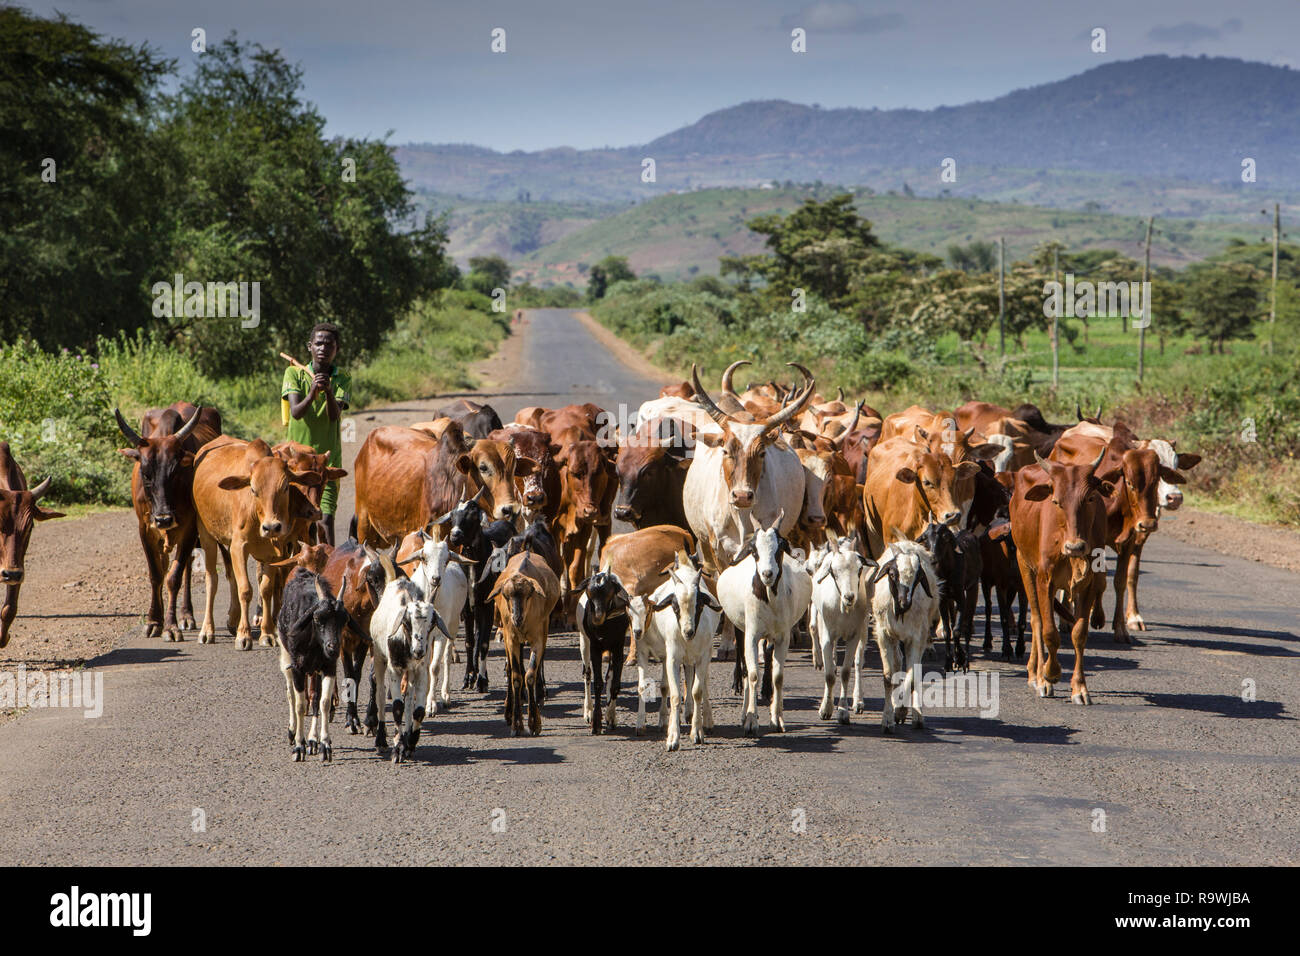 Cattle herding on roads of Arba Minch, Ethiopia Stock Photo